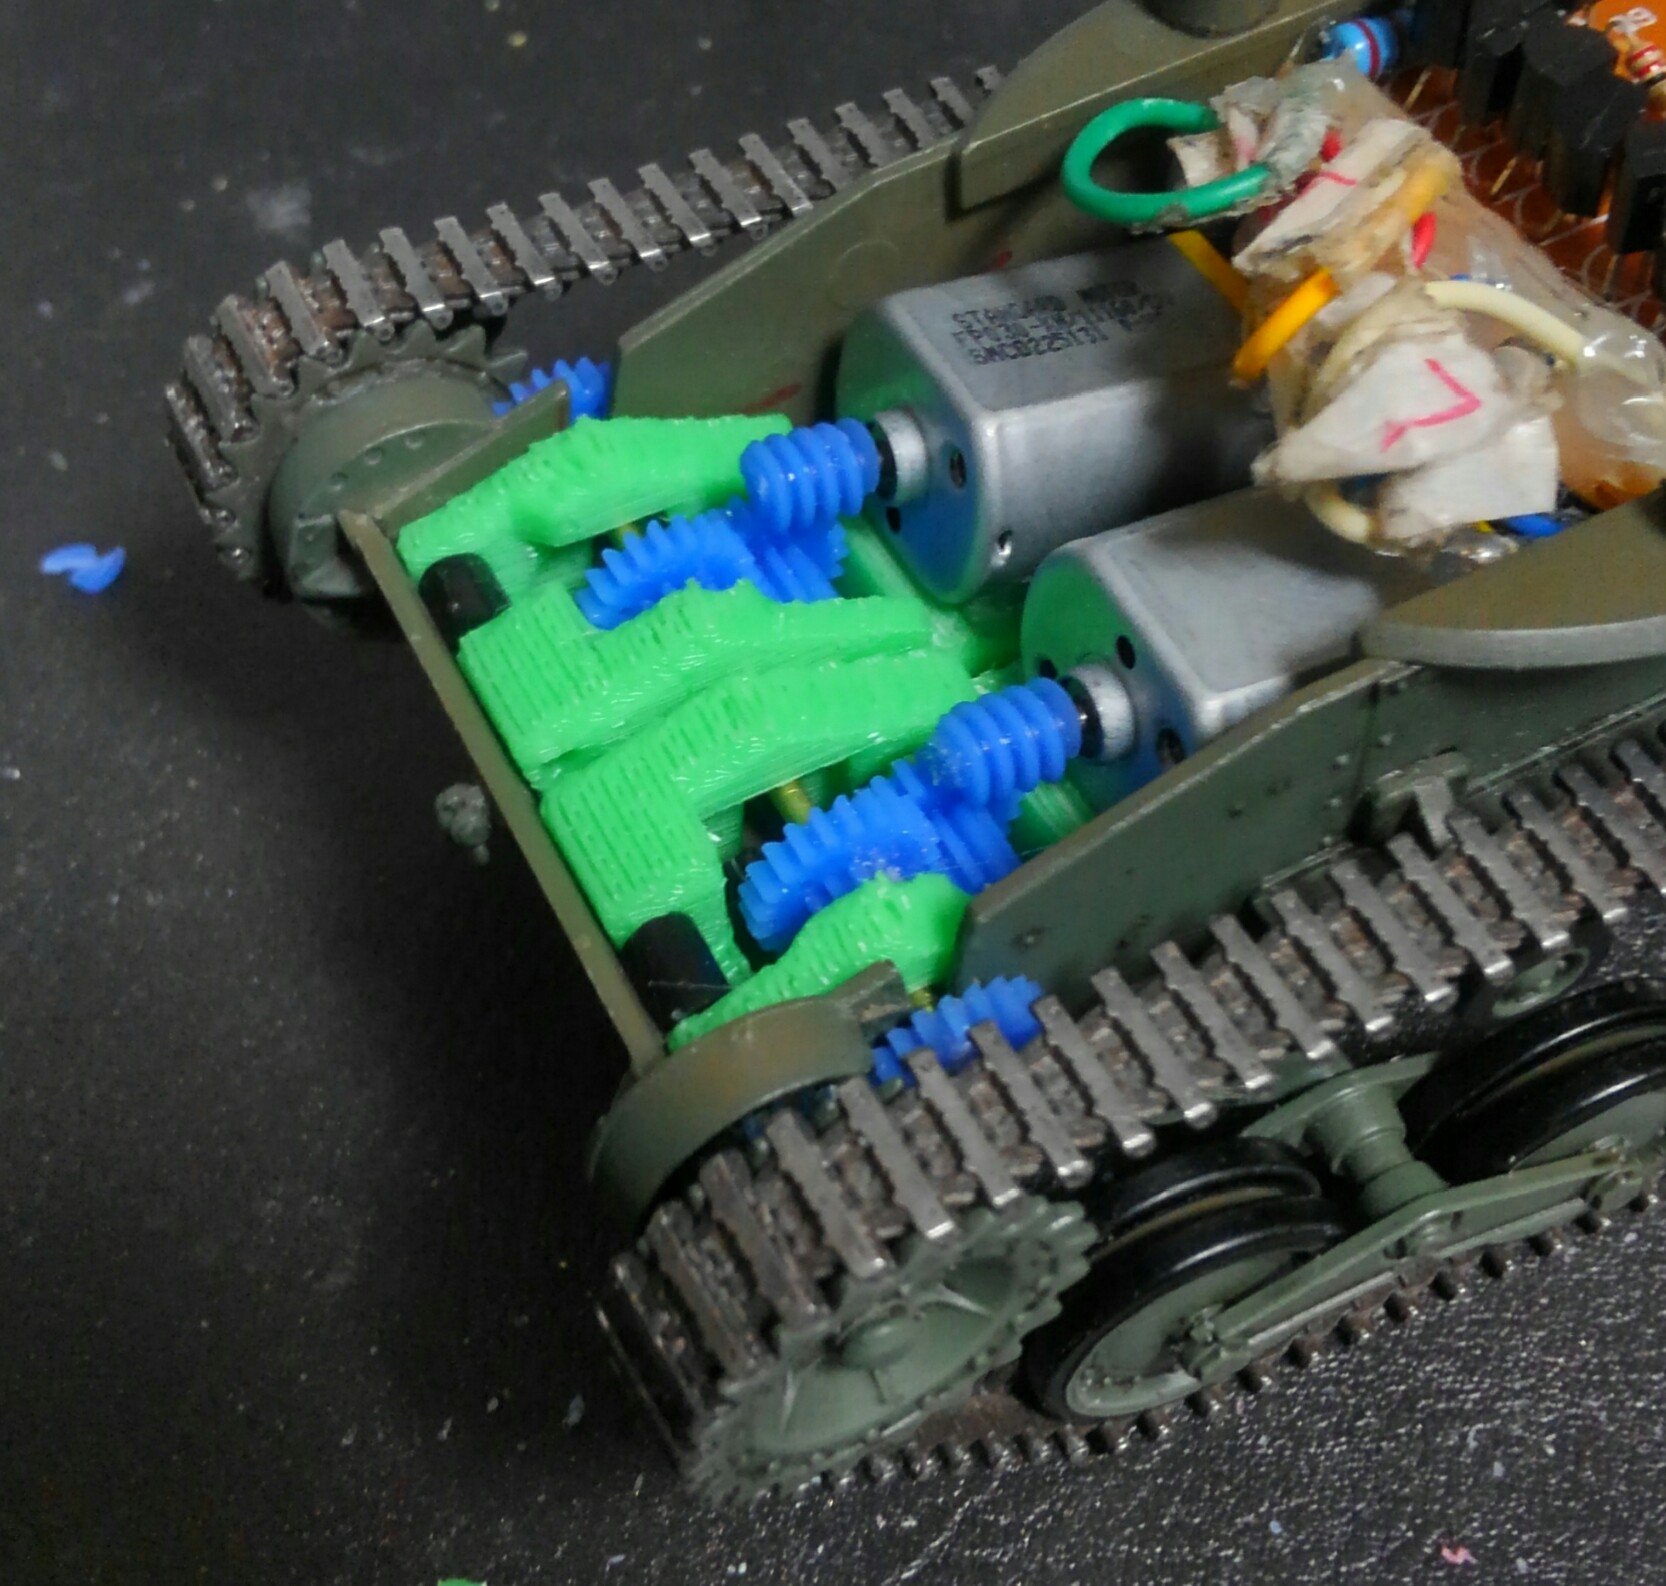 石膏粉末p Sekkou P ギアボックス完成しました 戦車模型のモーターライズに必要なギアボックスを 3dプリンタ で自作 需要があるのやら無いのやらｗ 模型戦車道 T Co Yyp02epvzn Twitter